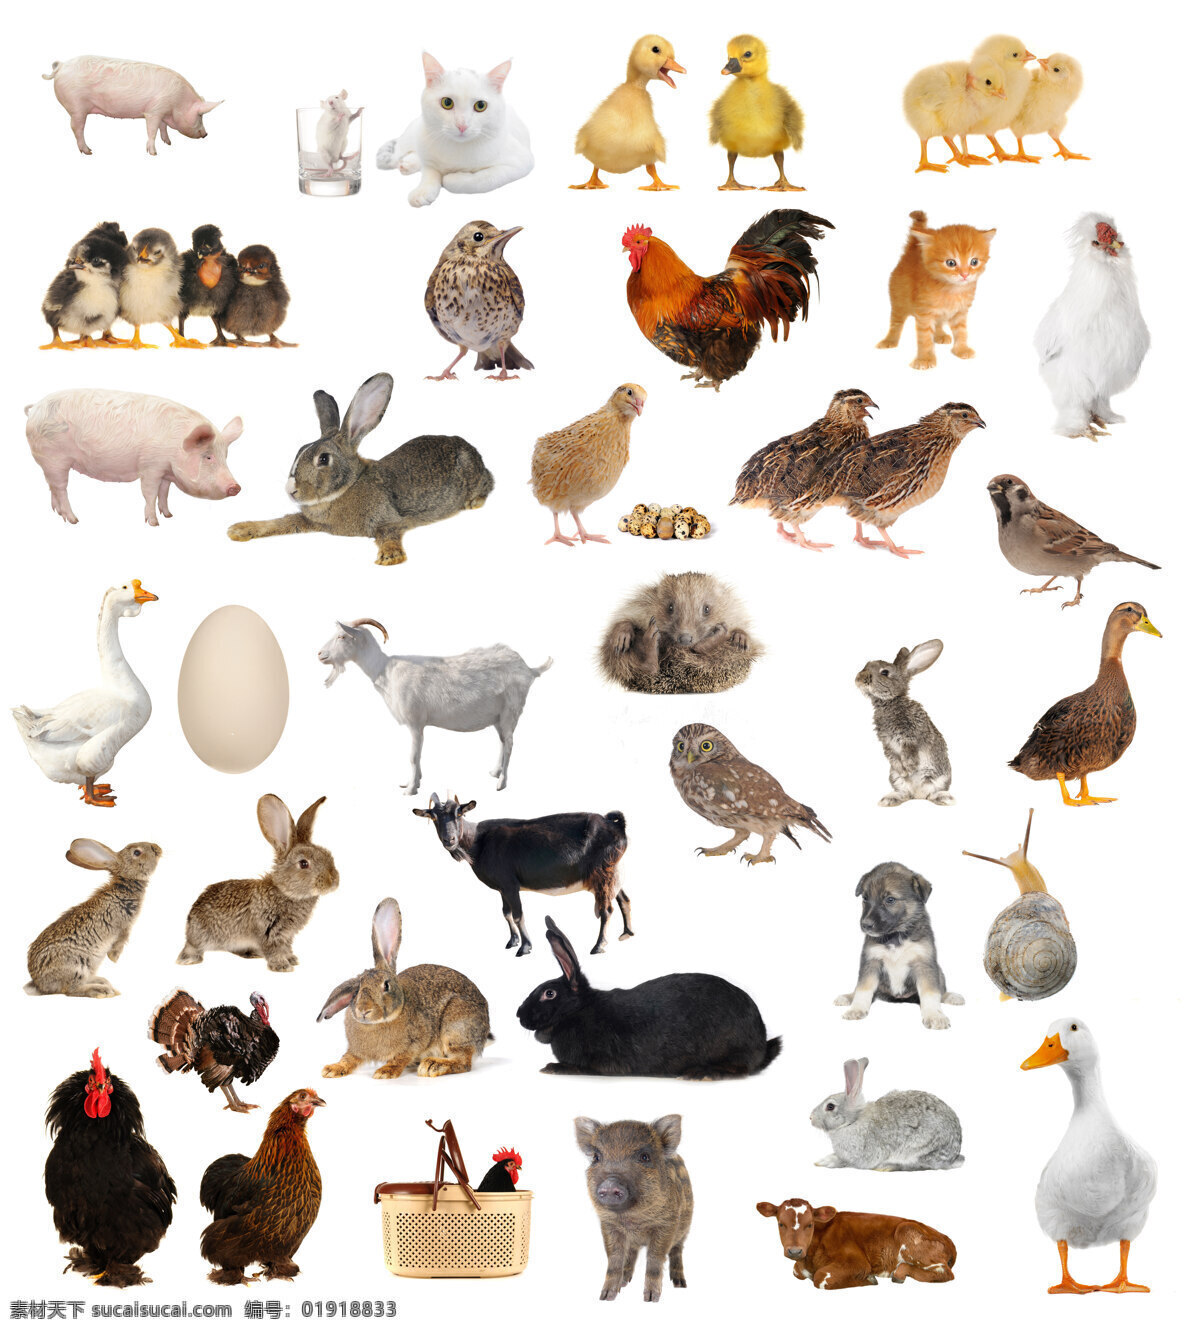 种 家庭 常见 家畜 家禽 高清 动物 猫 鸡 鸟 狗 鹅 猪 牛 兔 羊 鸡蛋 蜗牛 猫头鹰 宠物 麻雀 鸭子 高清图片 图片素材. 白色